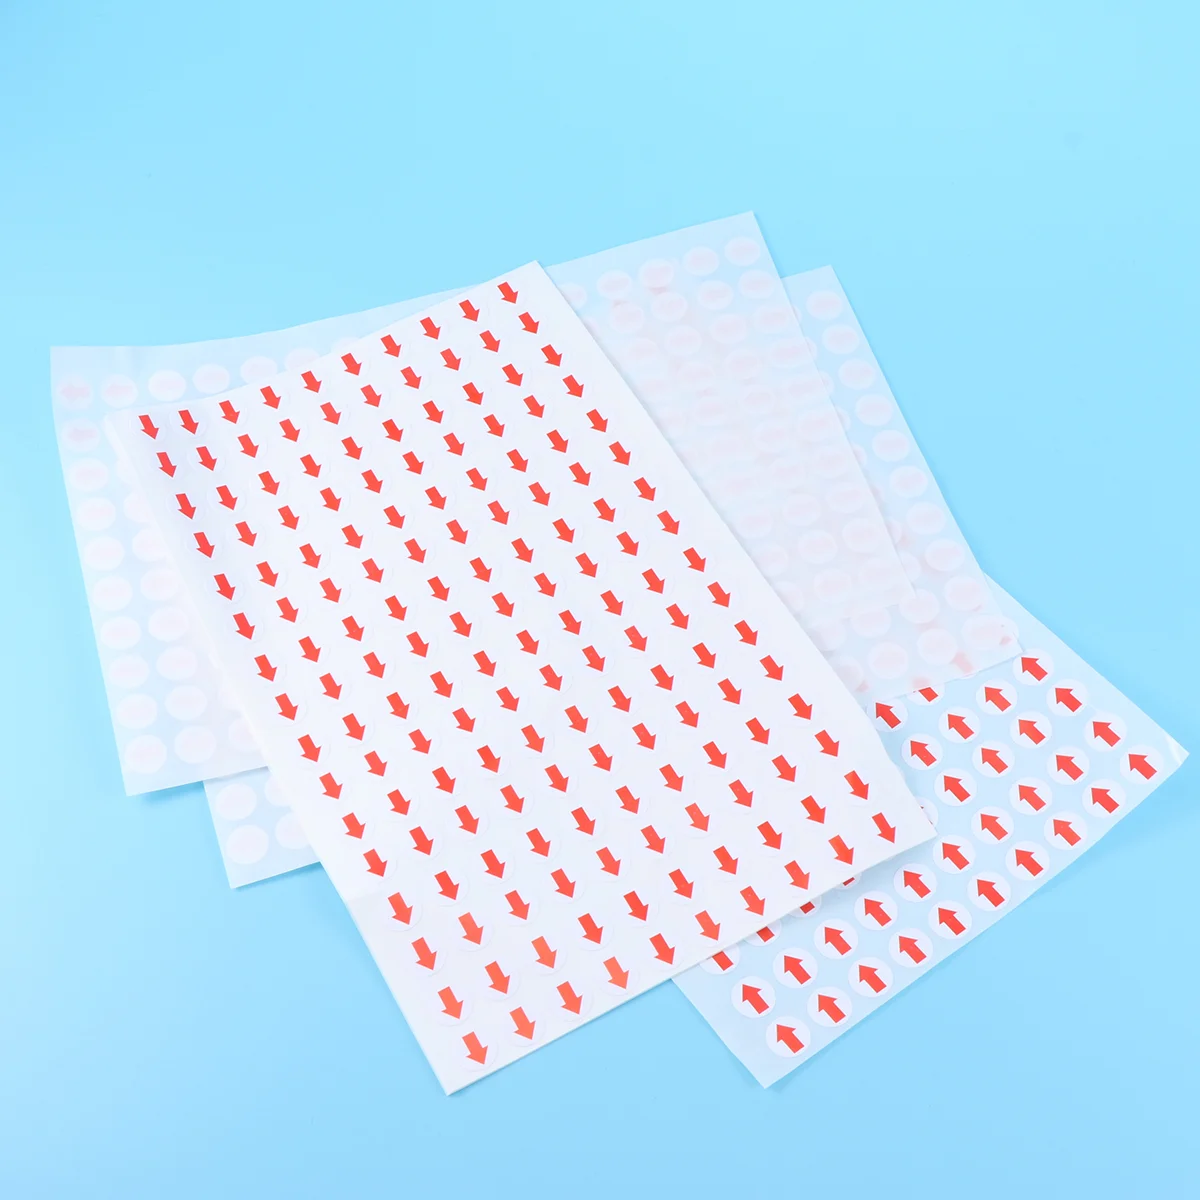 

10 мм Самоклеящиеся наклейки со стрелками, маленькие круглые наклейки-точки, индикаторная лента для проверки дефектов продукта (белый + красный)